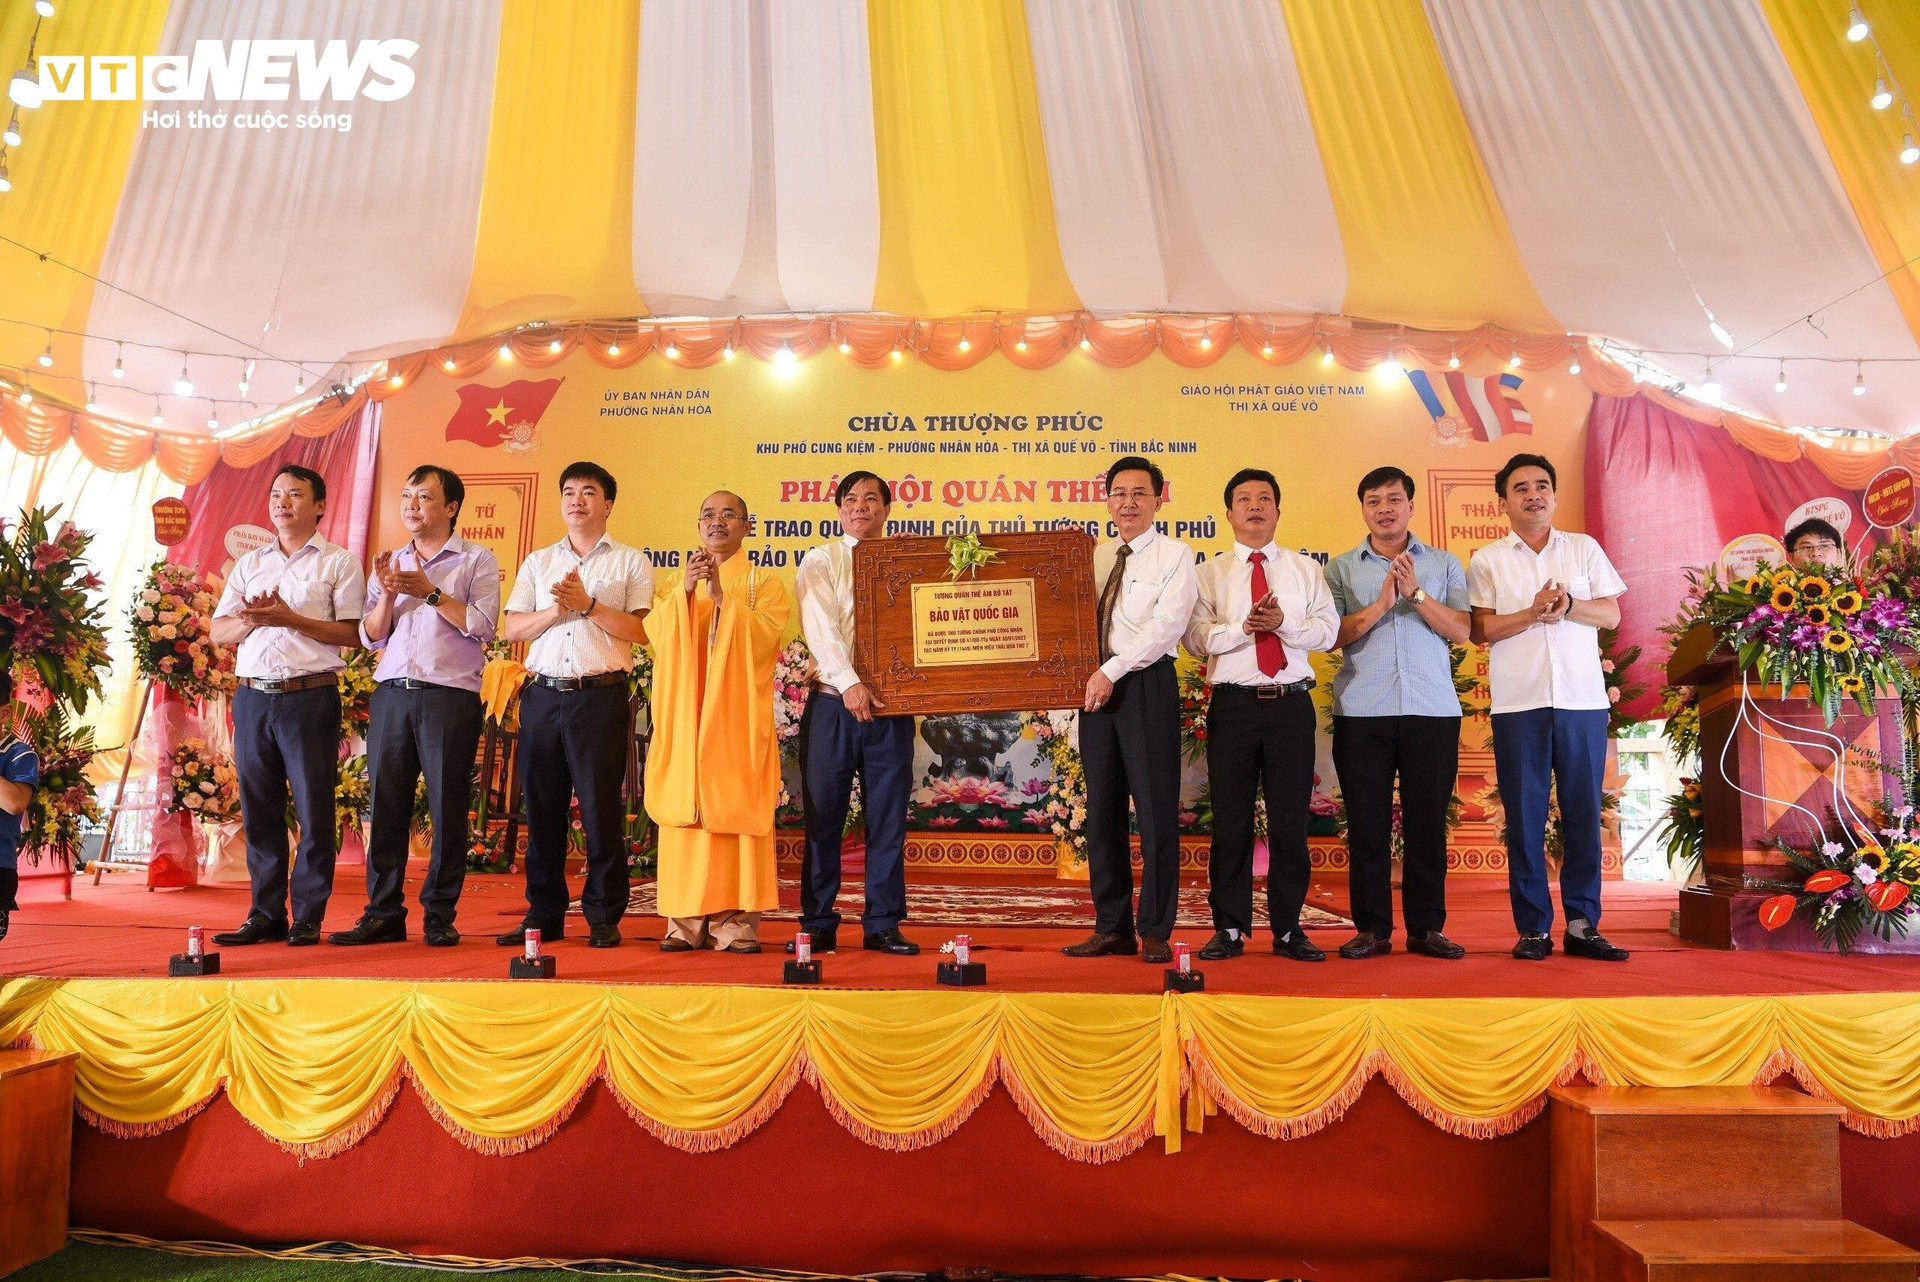 Lãnh đạo Sở Văn hóa, Thể thao và Du lịch tỉnh Bắc Ninh trao Bằng công nhận Bảo vật quốc gia tượng Quan Thế Âm cho chùa Cung Kiệm.